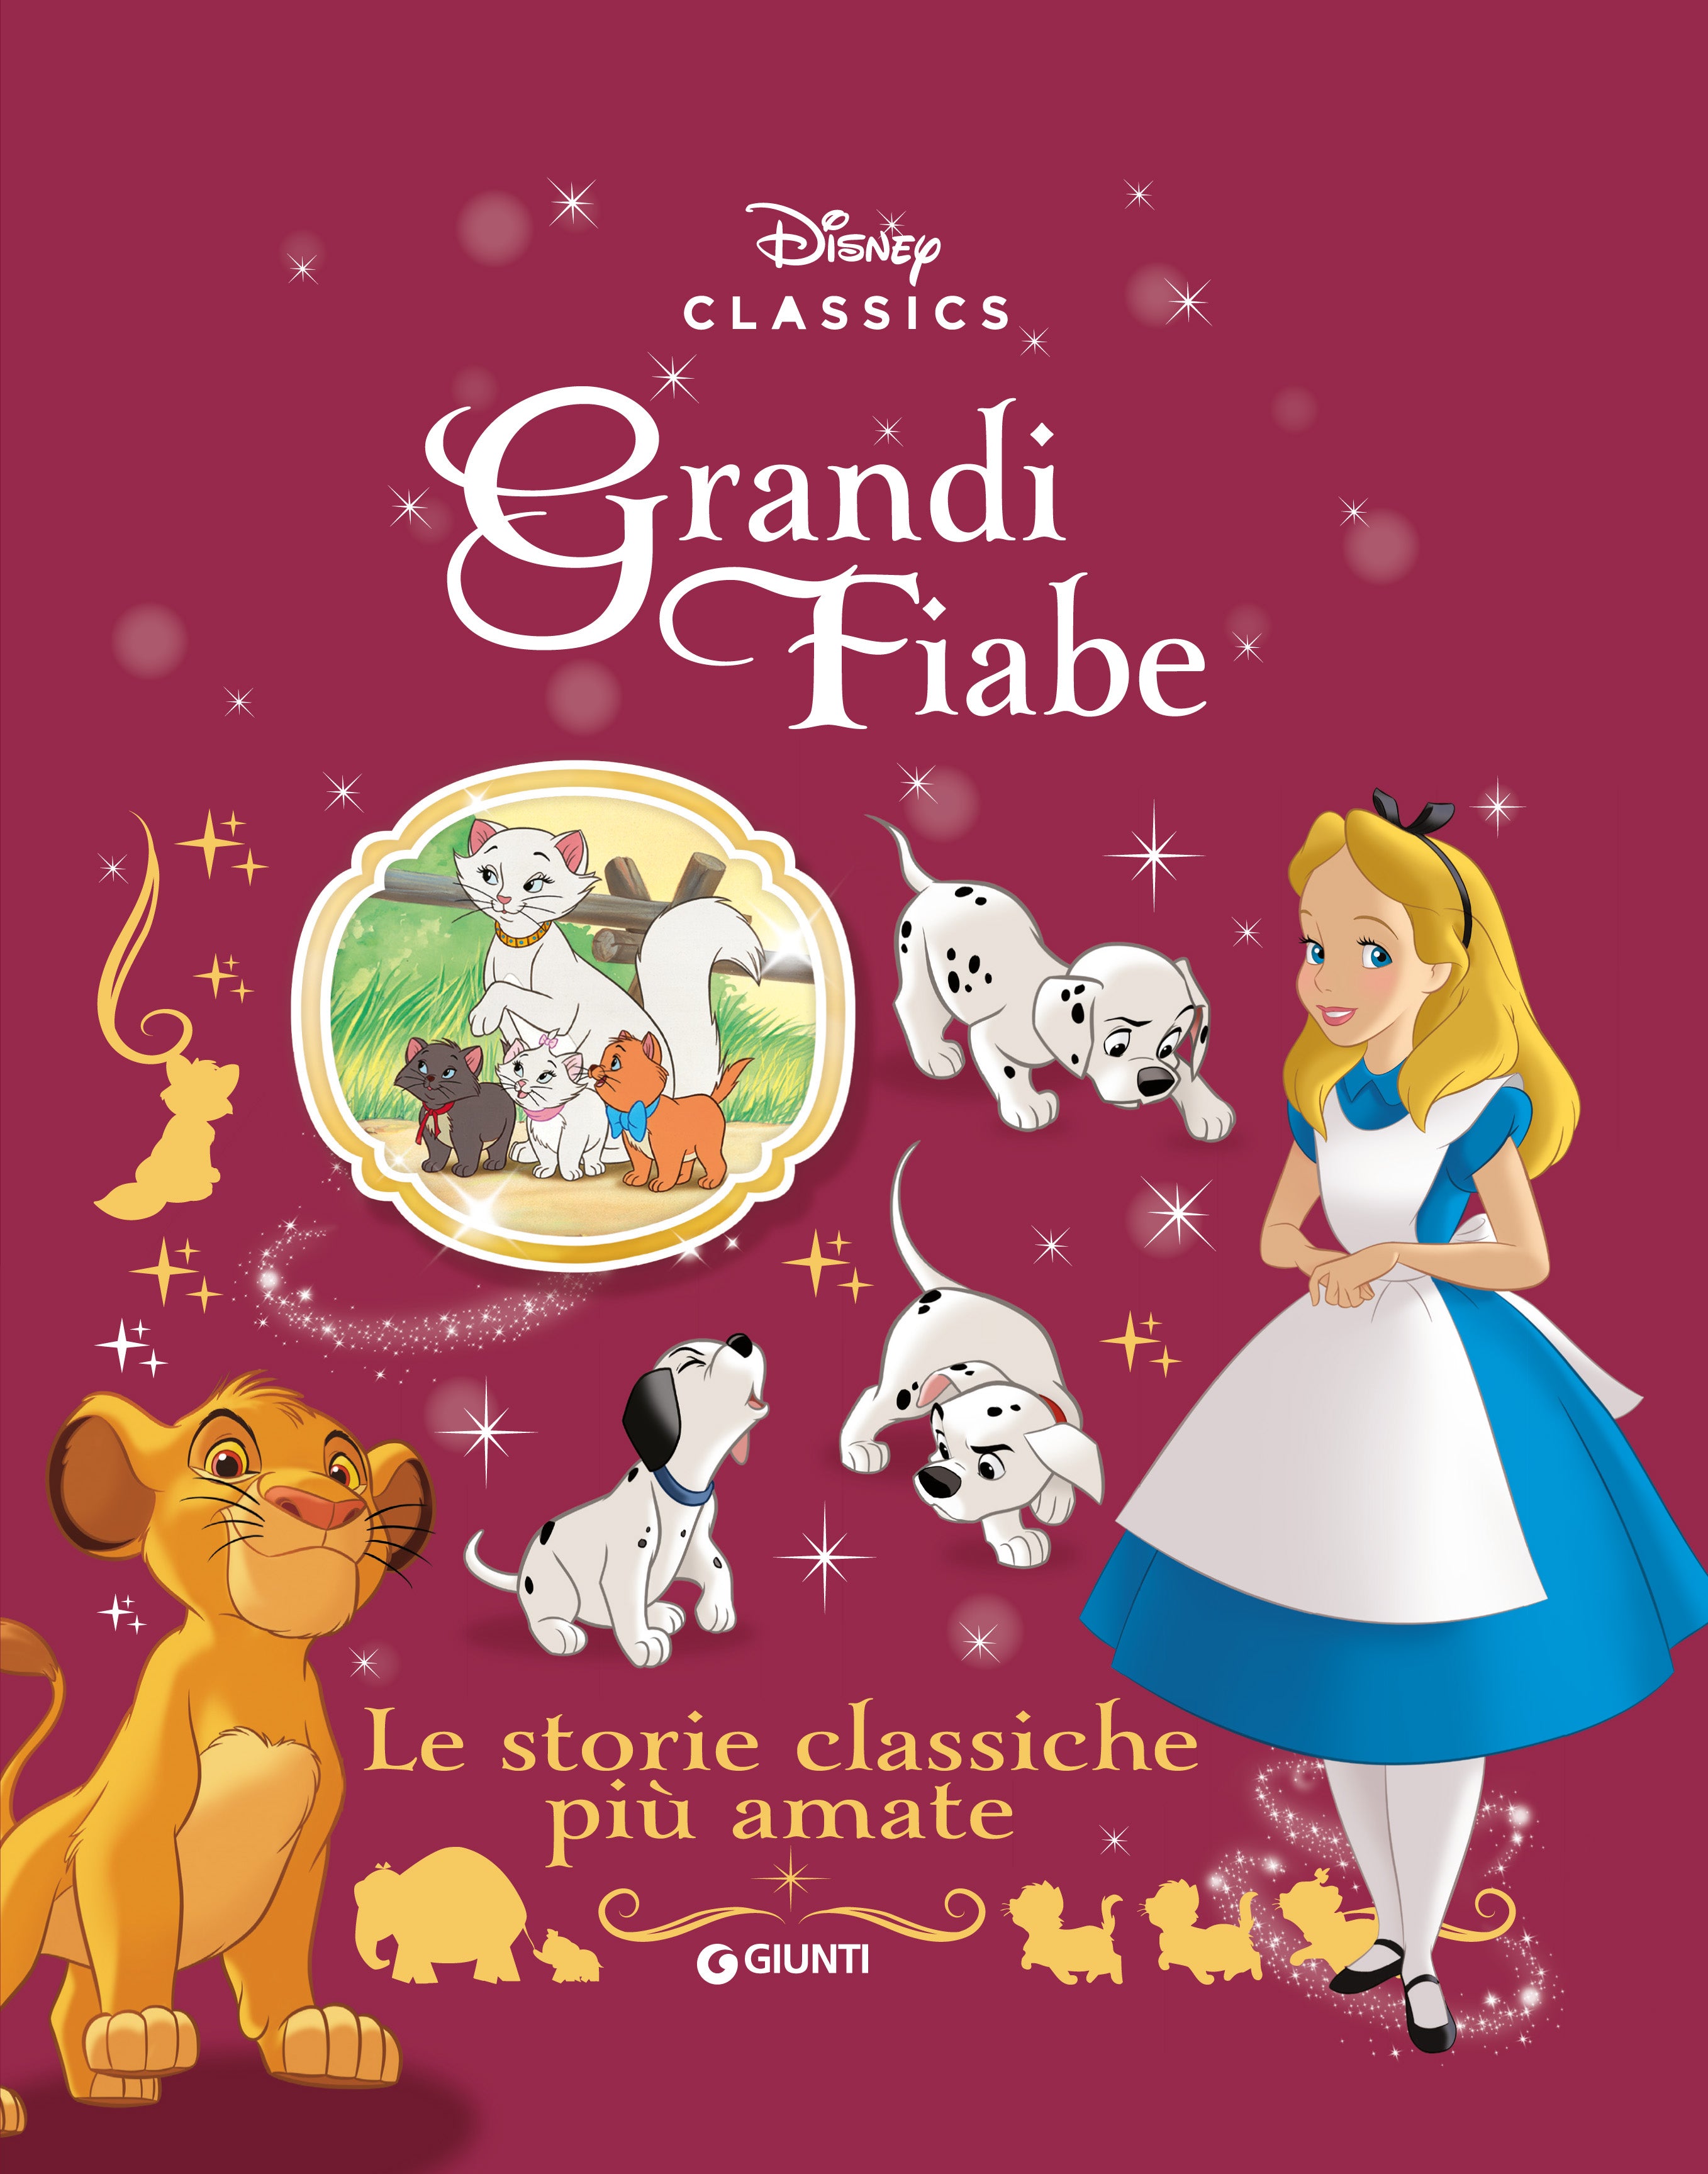 Le storie classiche più amate Grandi Fiabe Disney: libro di Walt Disney